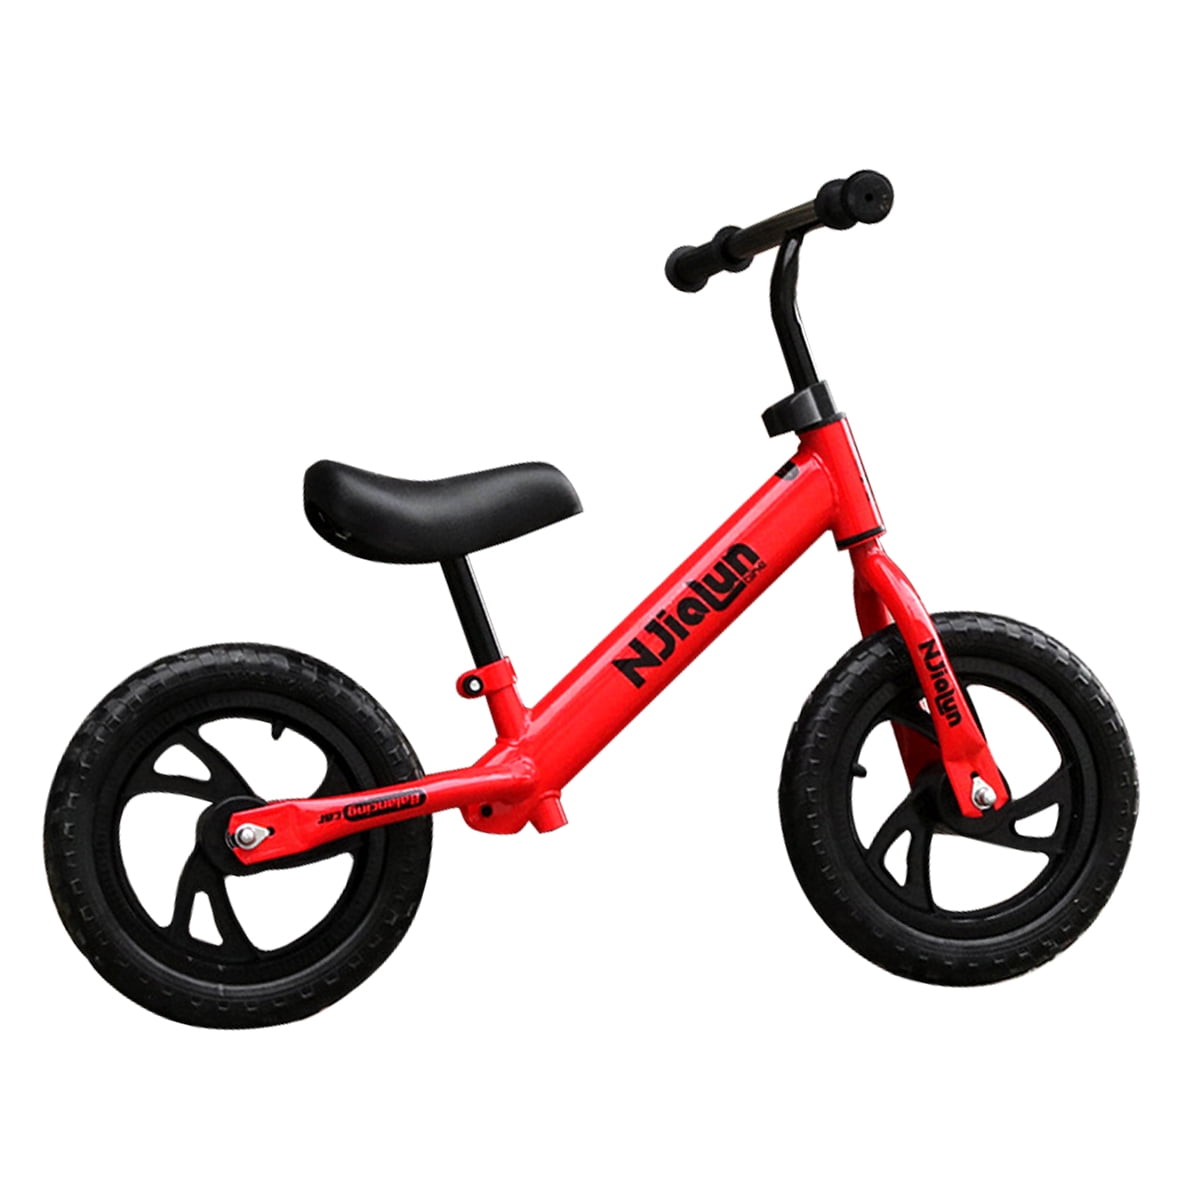 12" Toddler Balance Bike No Pedal Learn Baby Rides Beginner Push Walker Bicycle 